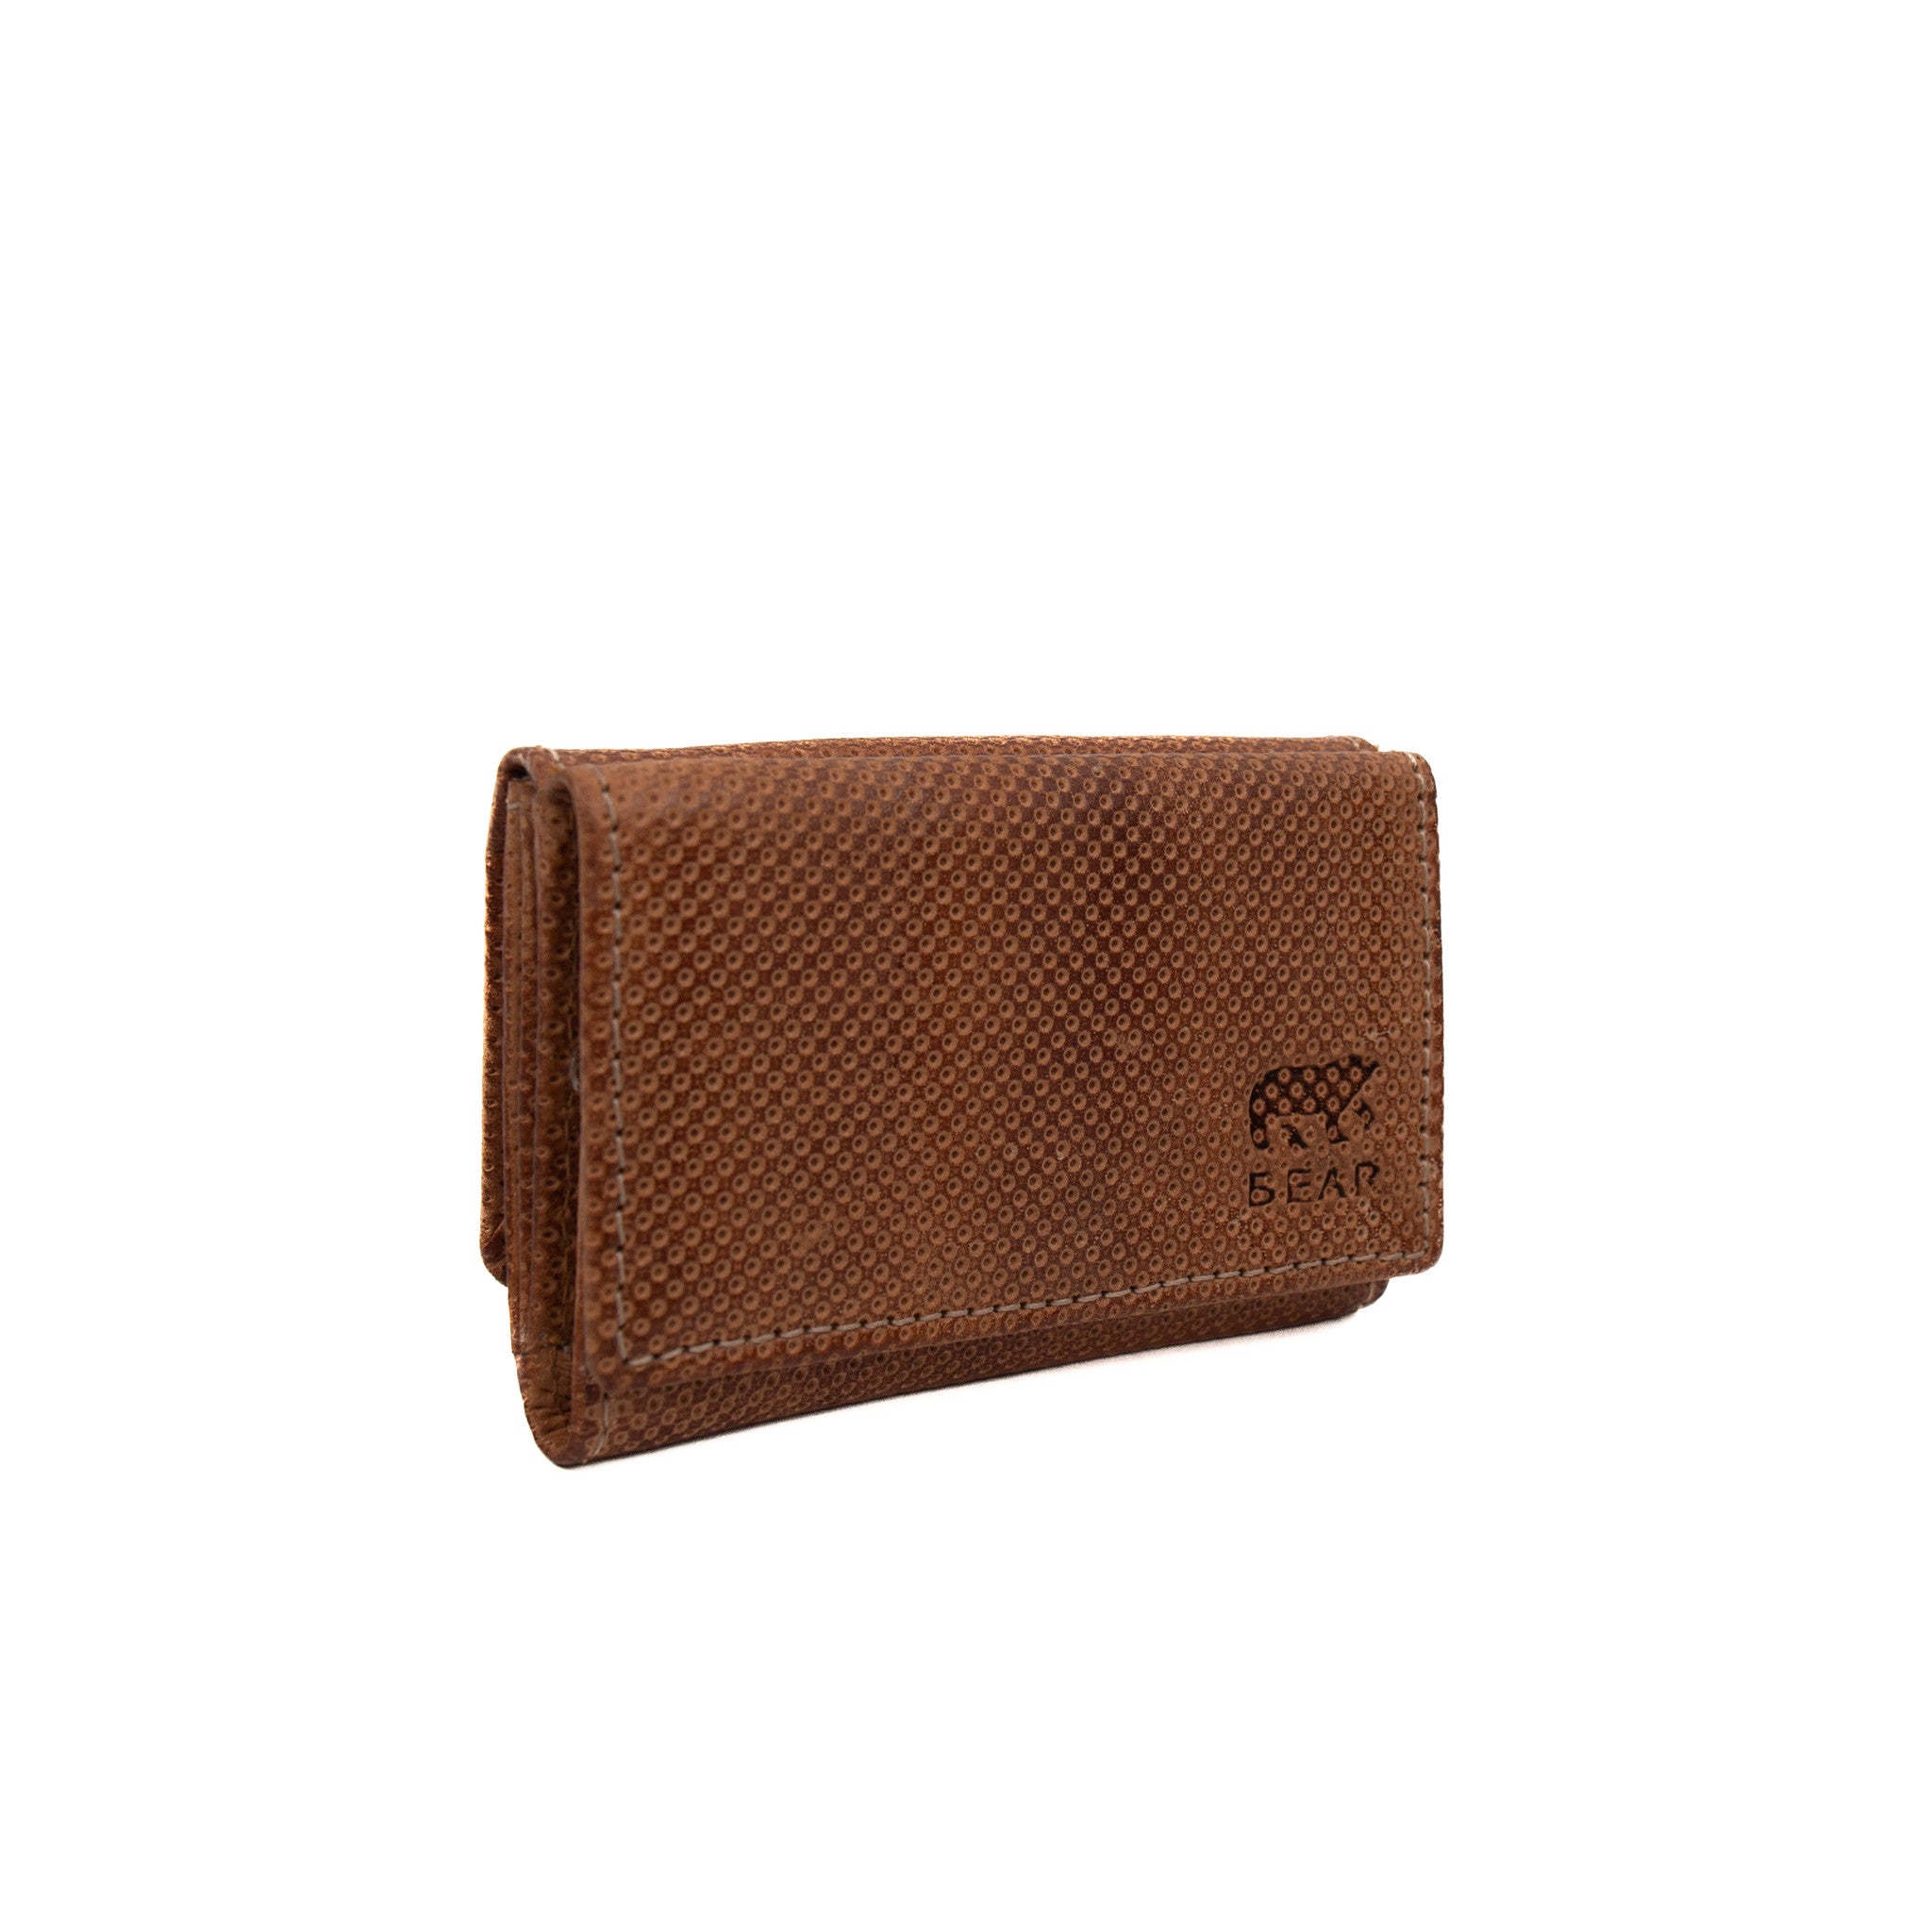 Mini wallet 'Milly' tan - DB 236